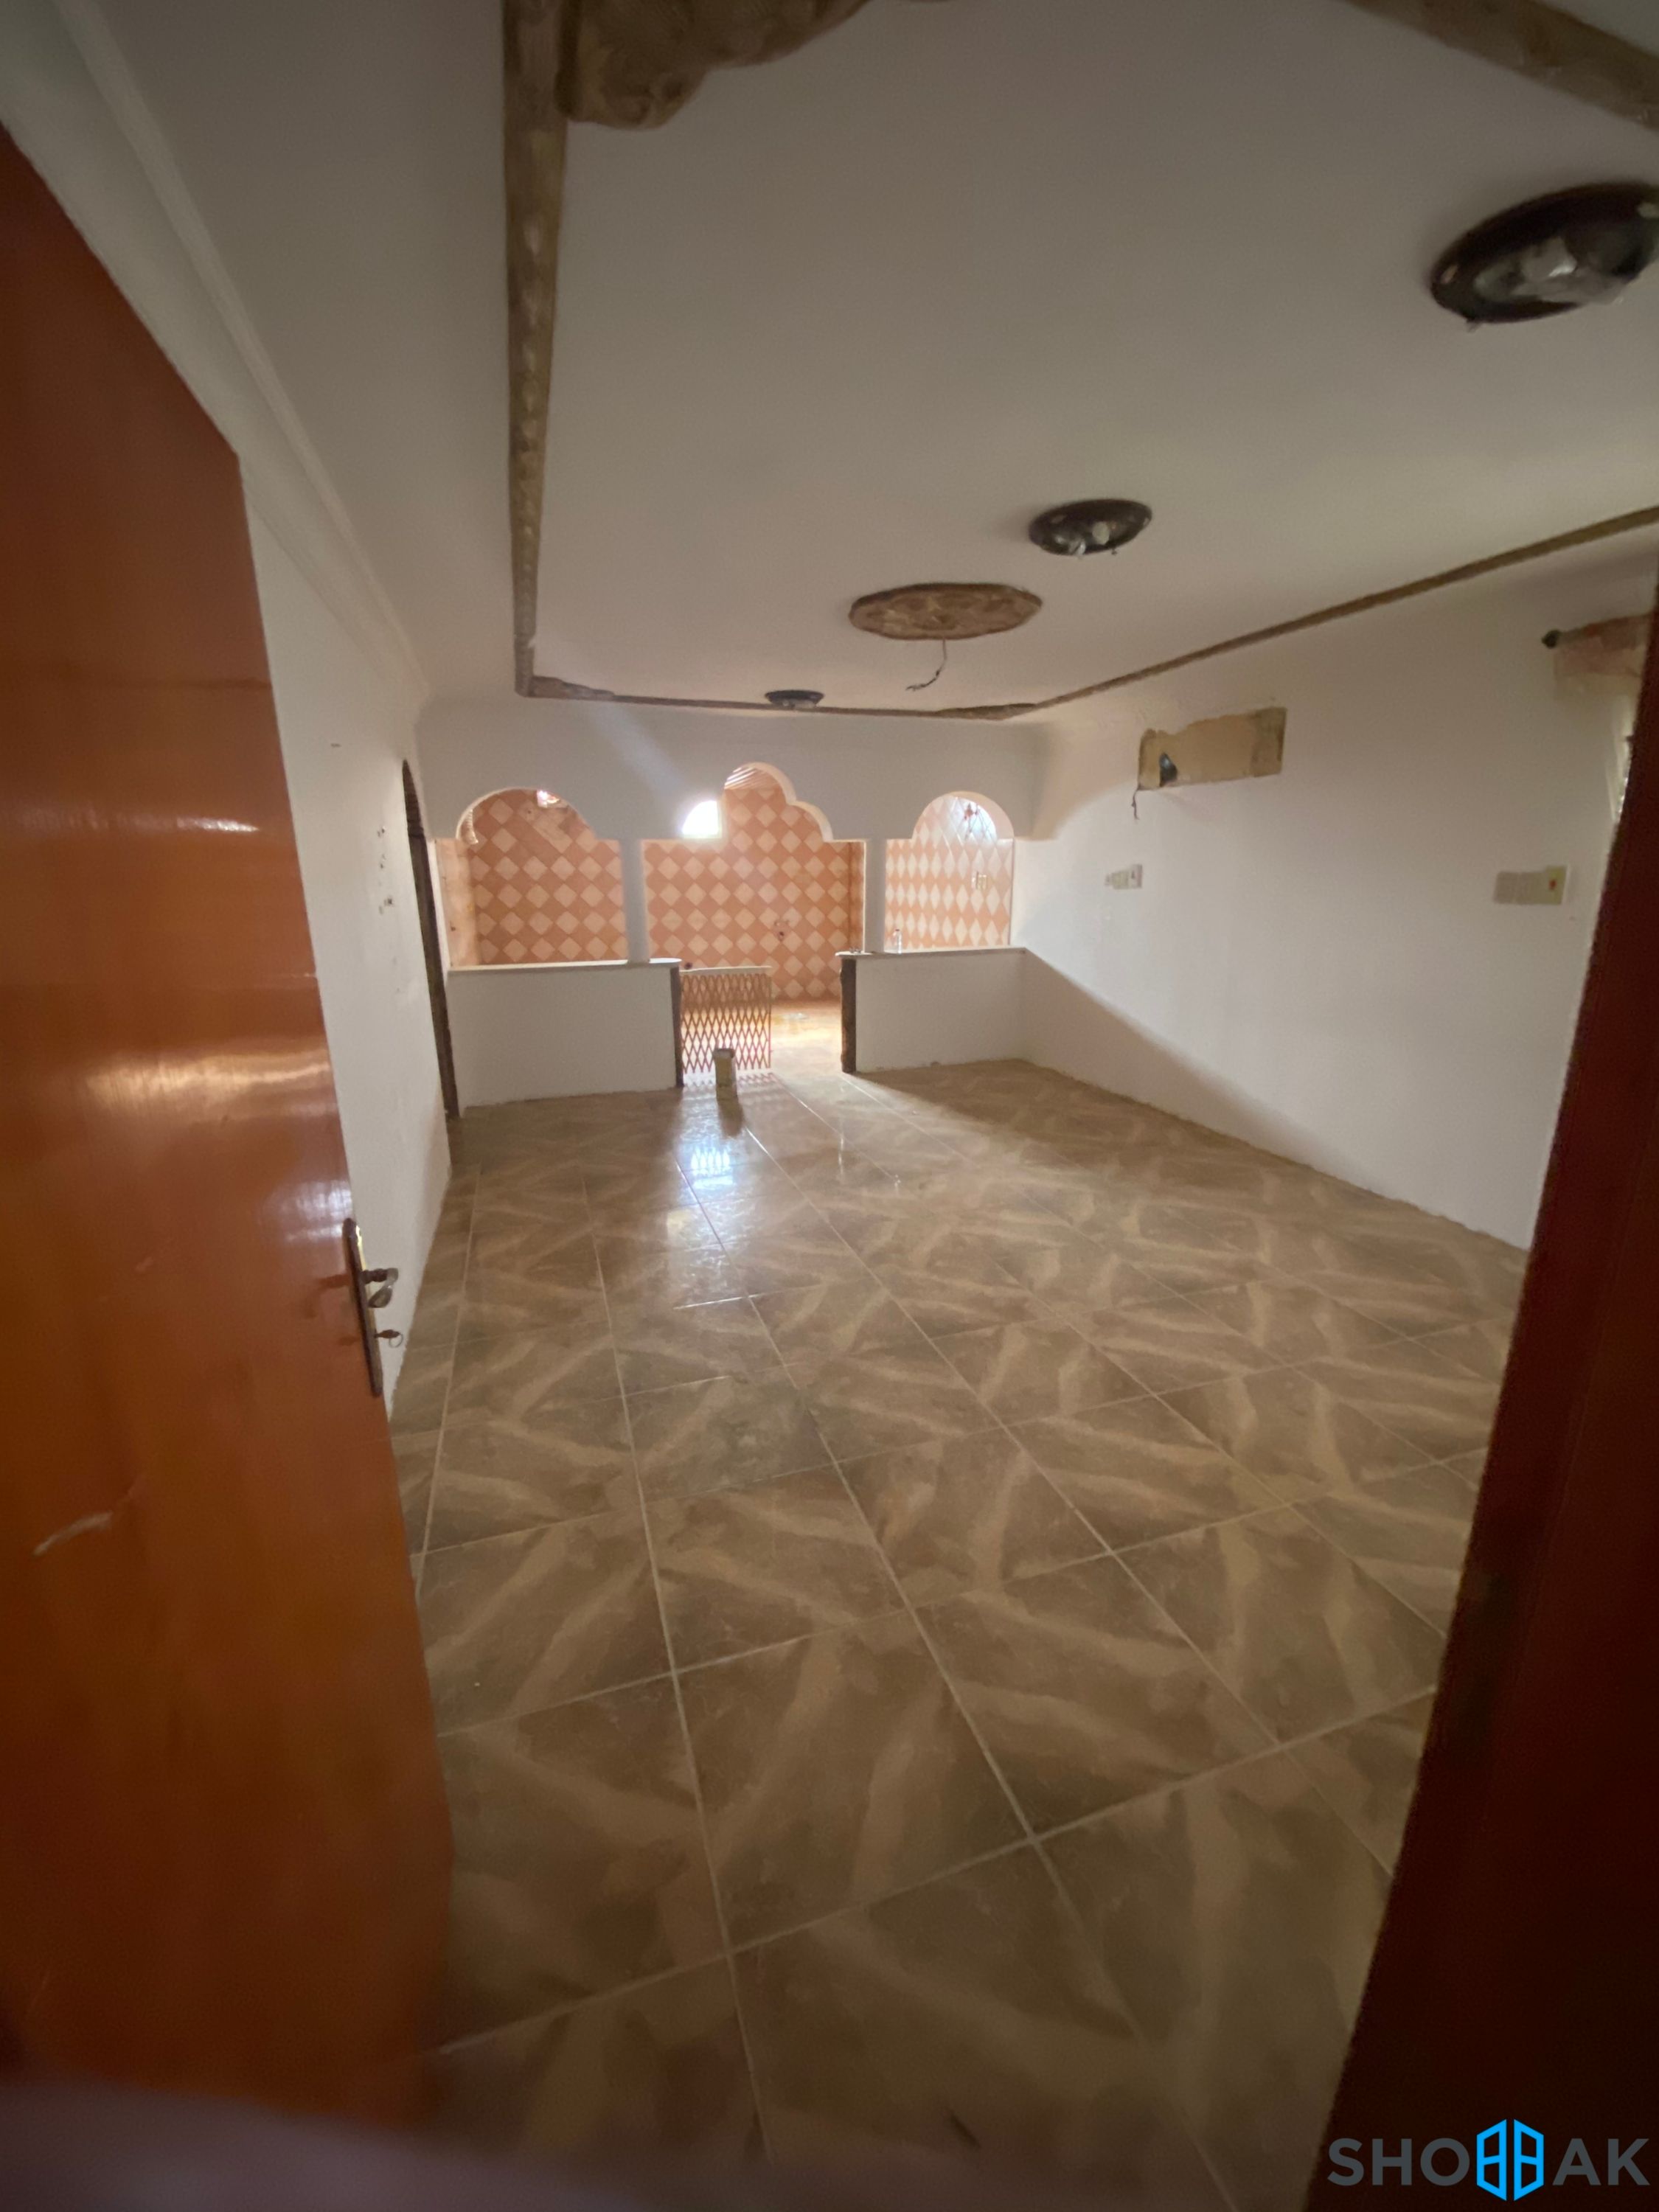 شقة في ( القطيف - تركيا ج ) للإجار 2 Shobbak Saudi Arabia